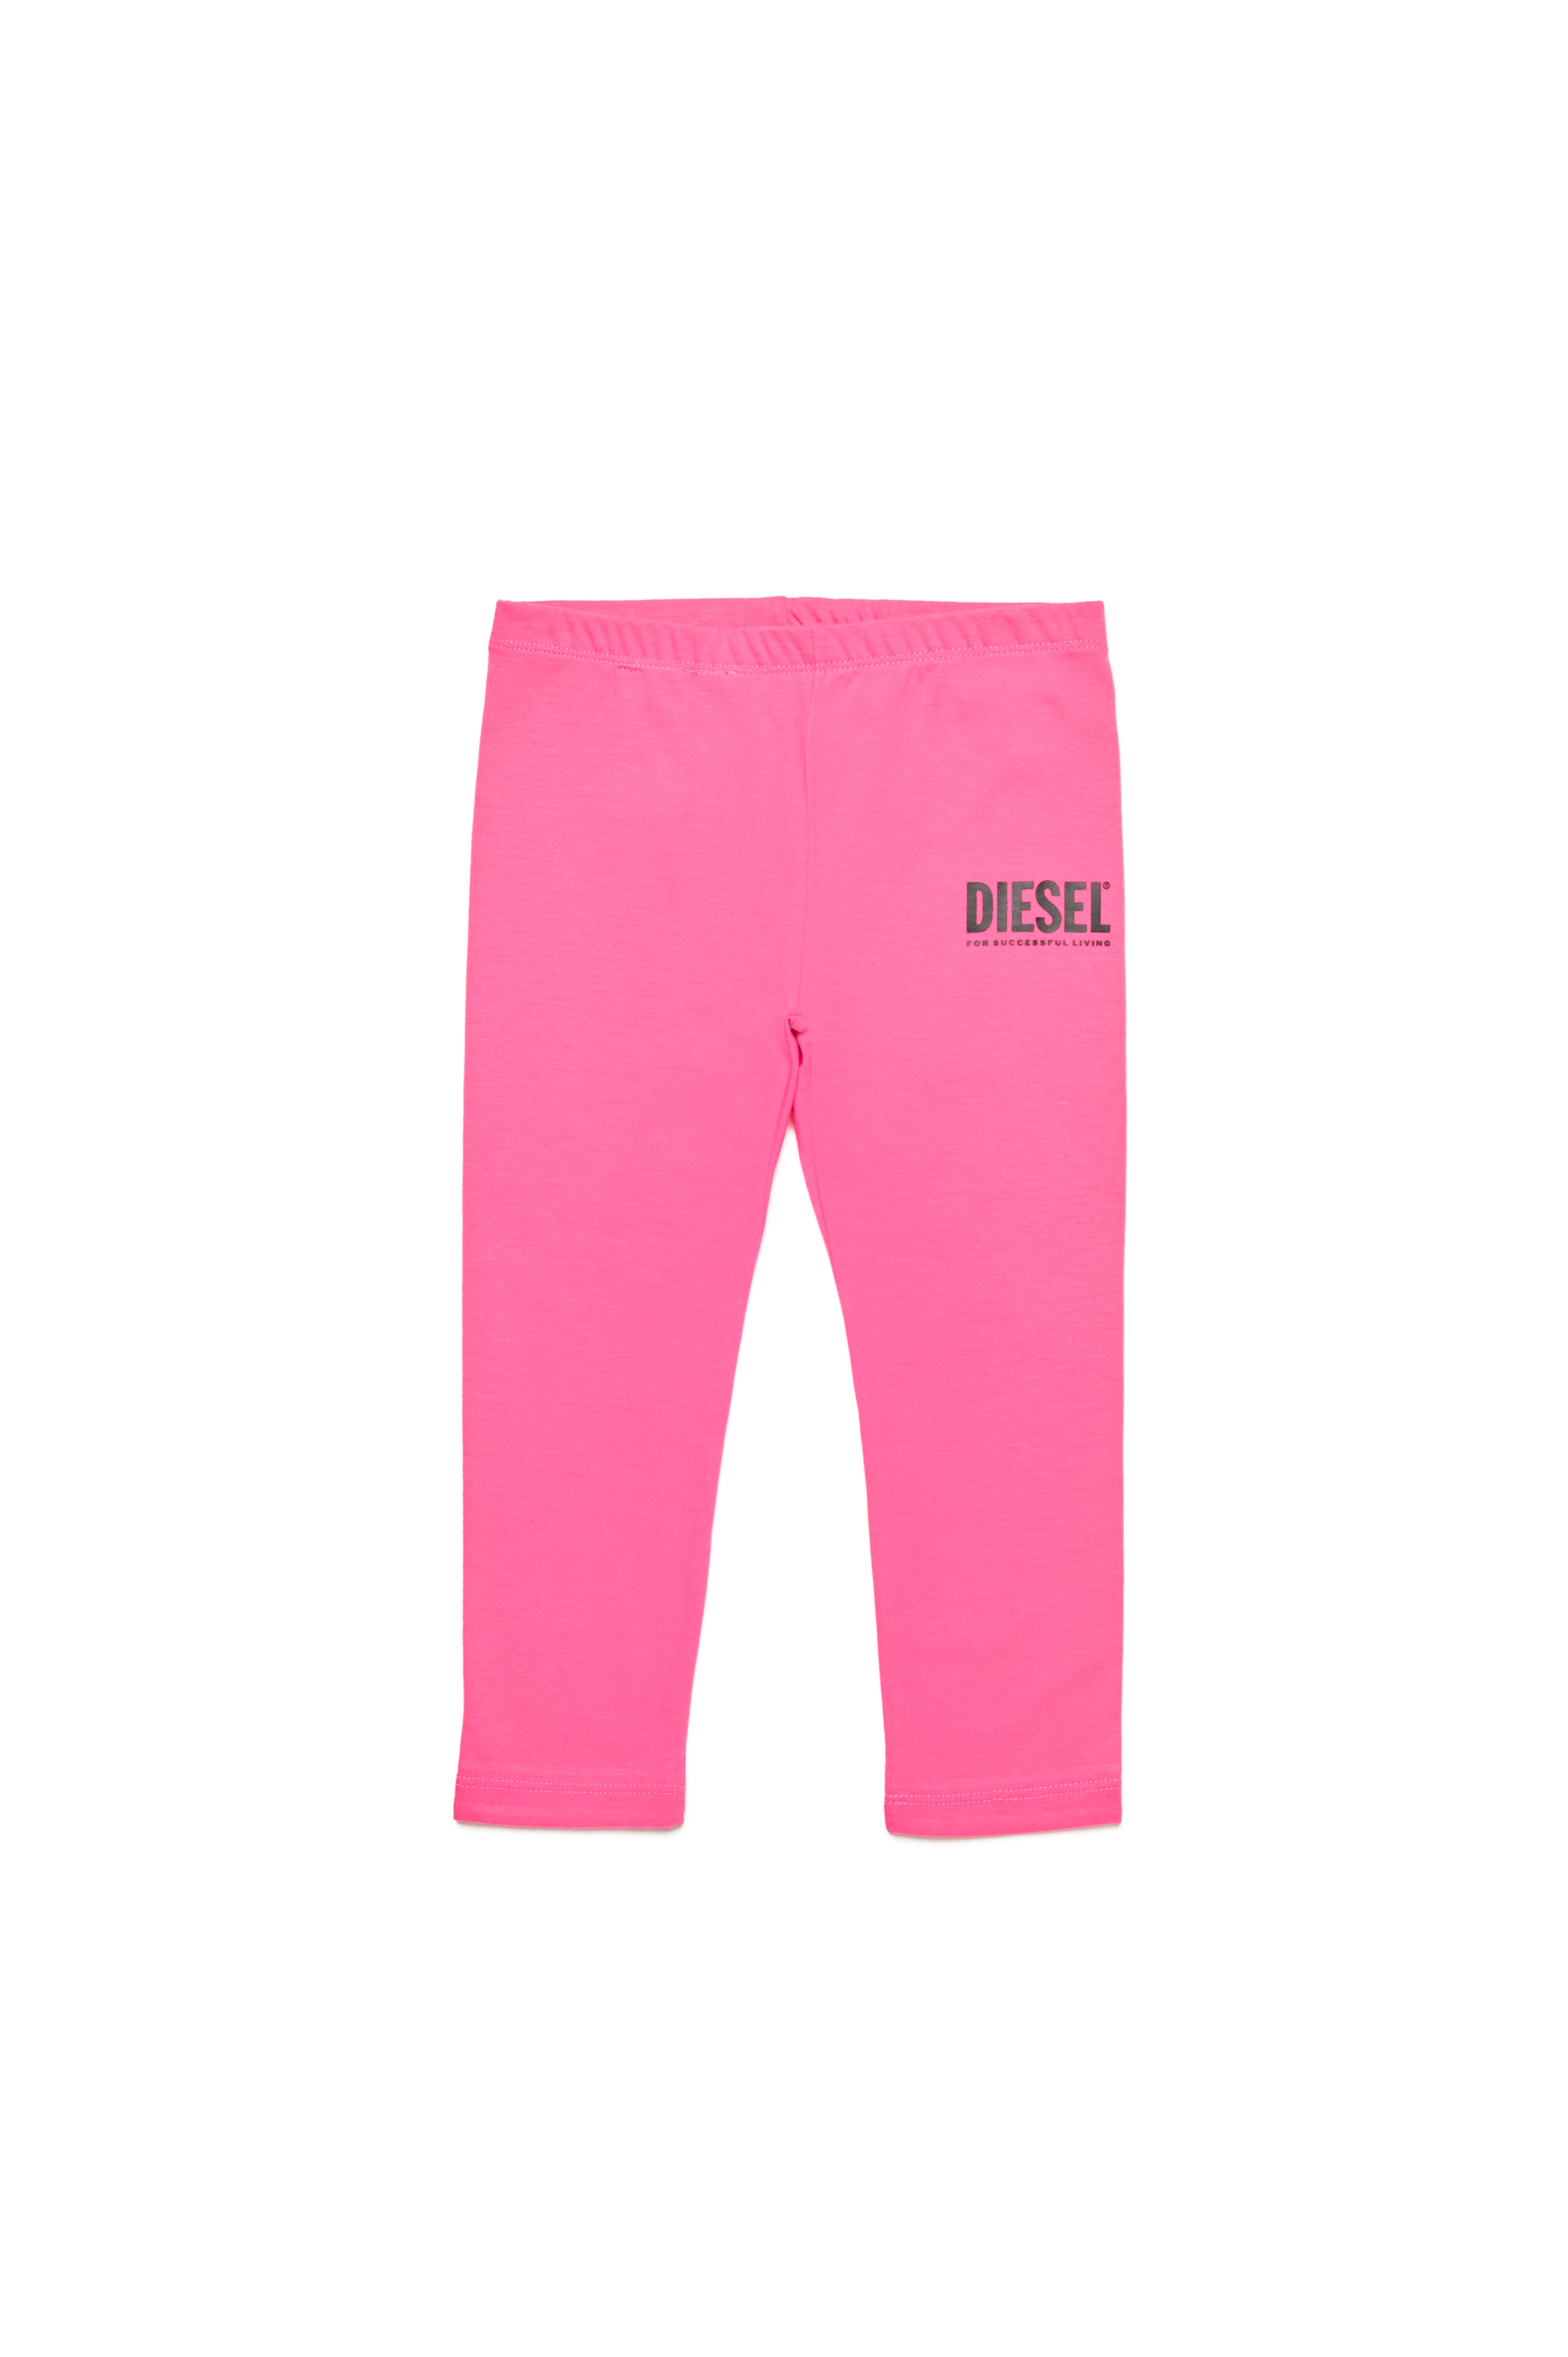 Diesel - Pantaloni in cotone con logo stampato - Pantaloni - Donna - Rosa